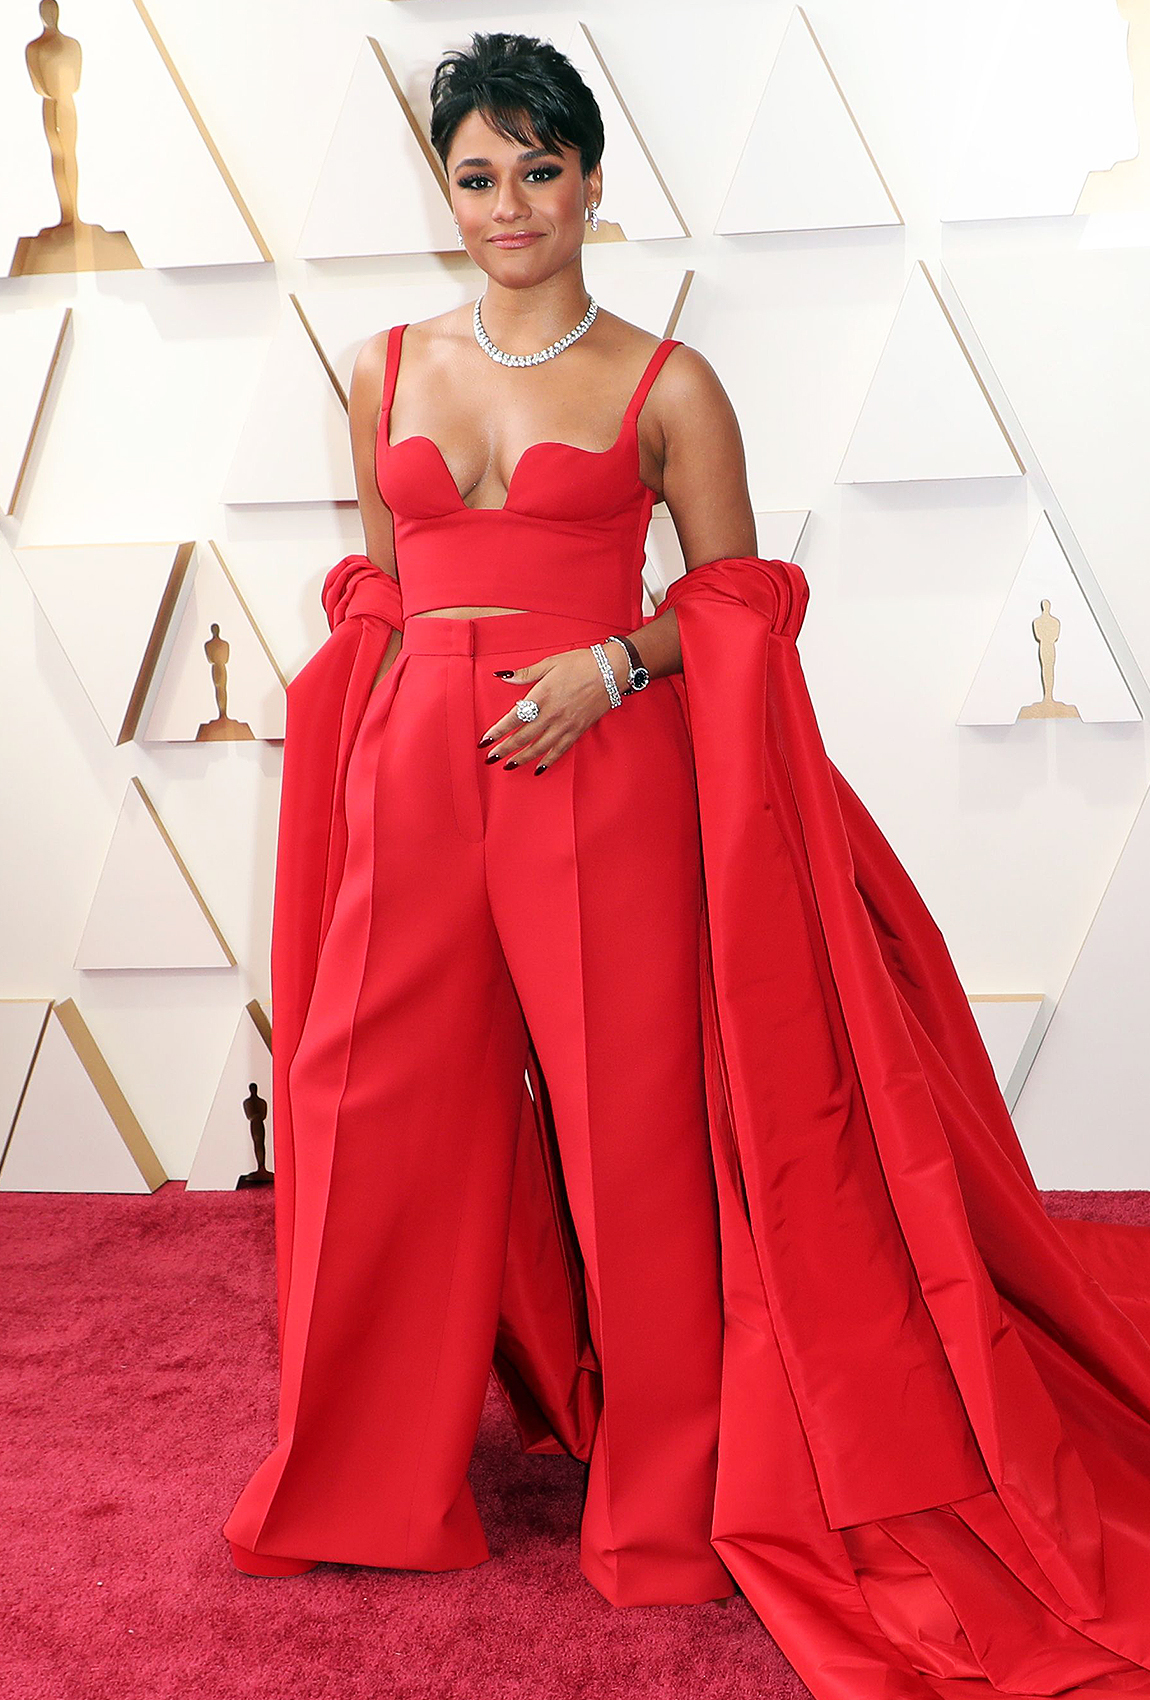 Mãn nhãn với trang phục của các sao Hollywood trên thảm đỏ Oscars 2022 - Ảnh 6